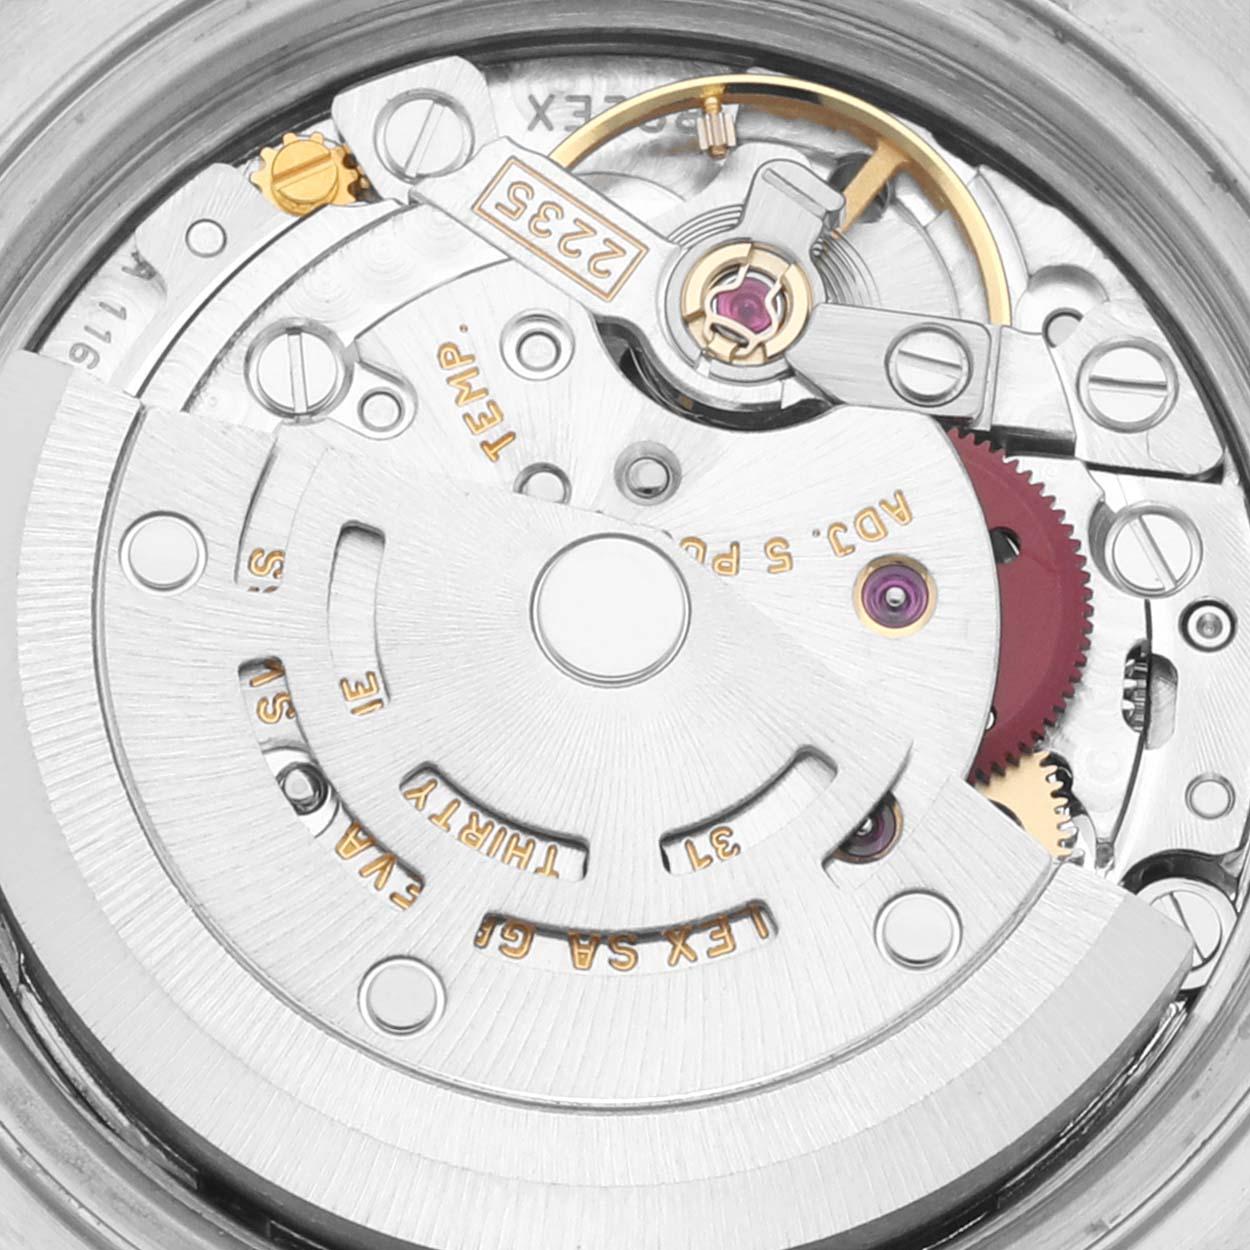 Rolex Datejust 26 Steel White Gold Tapestry Dial Ladies Watch 79174 Box Papers. Mouvement automatique à remontage automatique, officiellement certifié chronomètre. Boîtier oyster en acier inoxydable de 26.0 mm de diamètre. Logo Rolex sur une